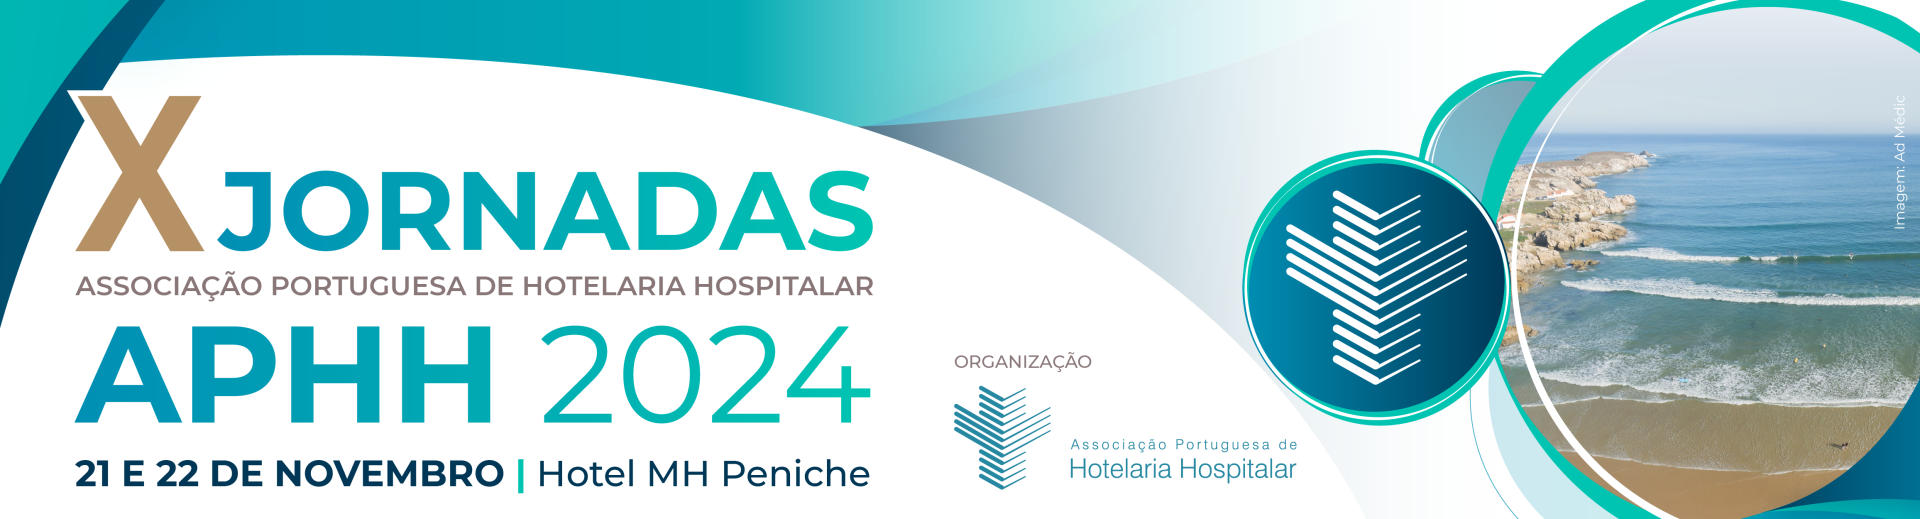 X Jornadas da Associao Portuguesa de Hotelaria Hospitalar